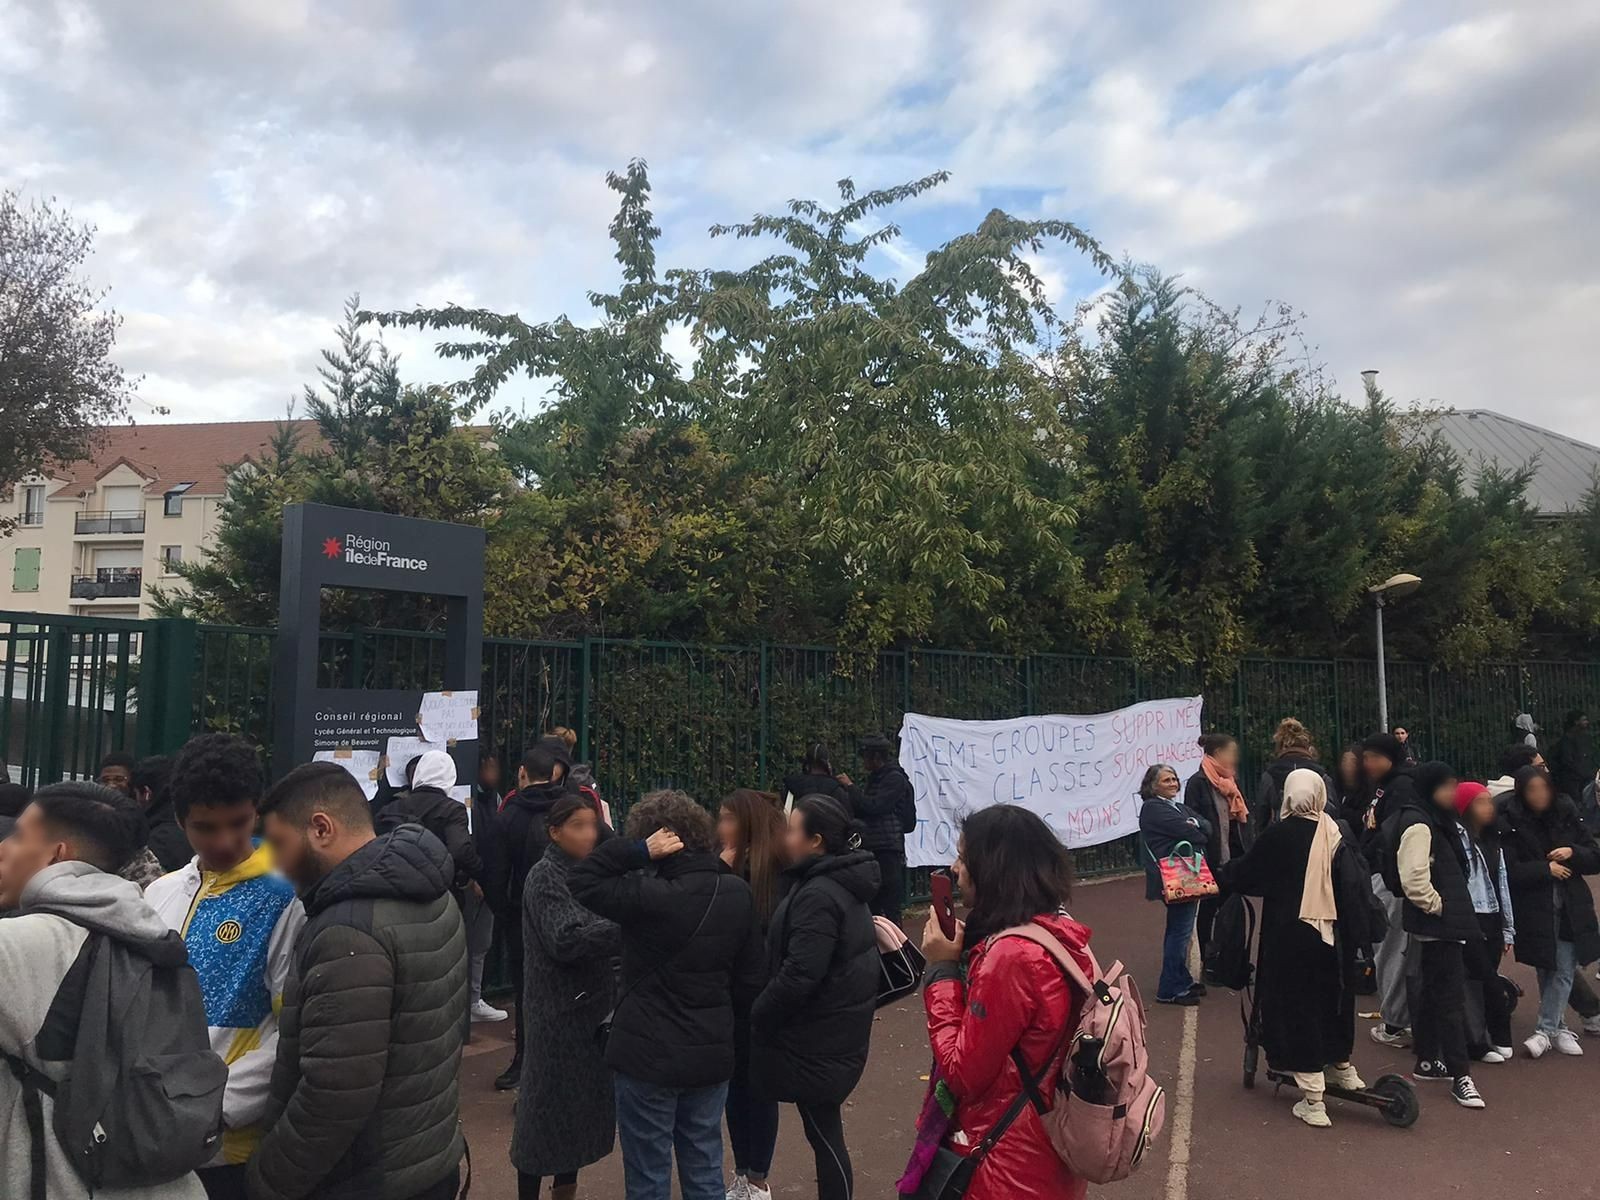 Garges-lès-Gonesse, le 8 novembre. Les élèves du lycée Simone-de-Beauvoir ont organisé un cinquième jour de blocus pour faire valoir leurs revendications. Des enseignants se sont mis en grève pour les soutenir. DR